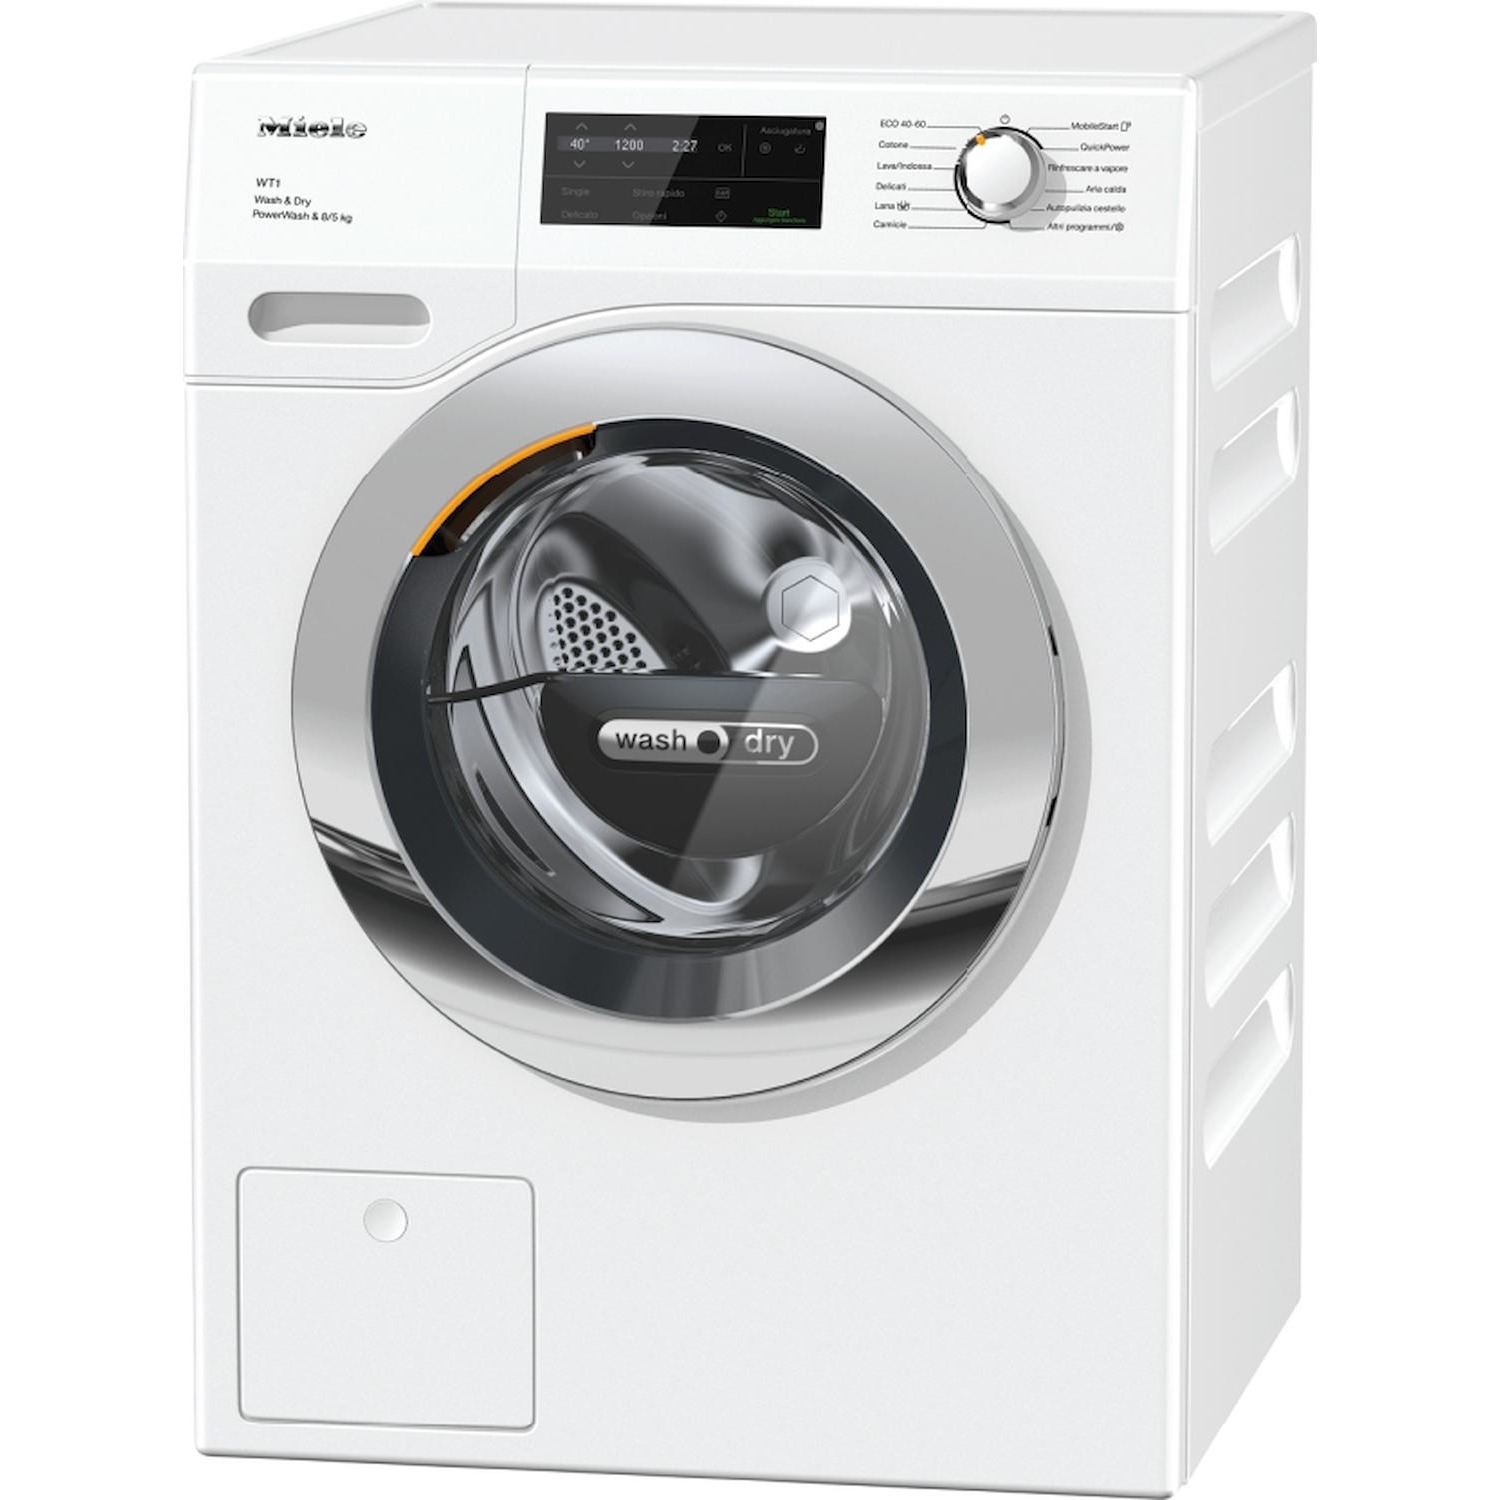 Immagine per Lavasciuga Miele WTI 370 WPM Power Wash 2.0  8kg   lavaggio / 5 kg asciugatura da DIMOStore